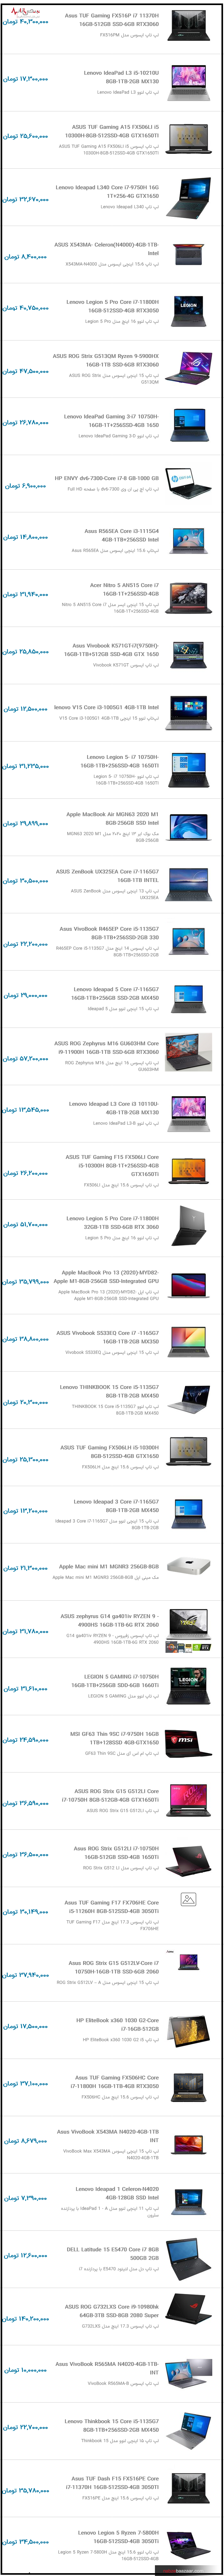 قیمت روز لپ تاپ ایسوس و لنوو امروز در بازار تهران ۱۵ دی ۱۴۰۰